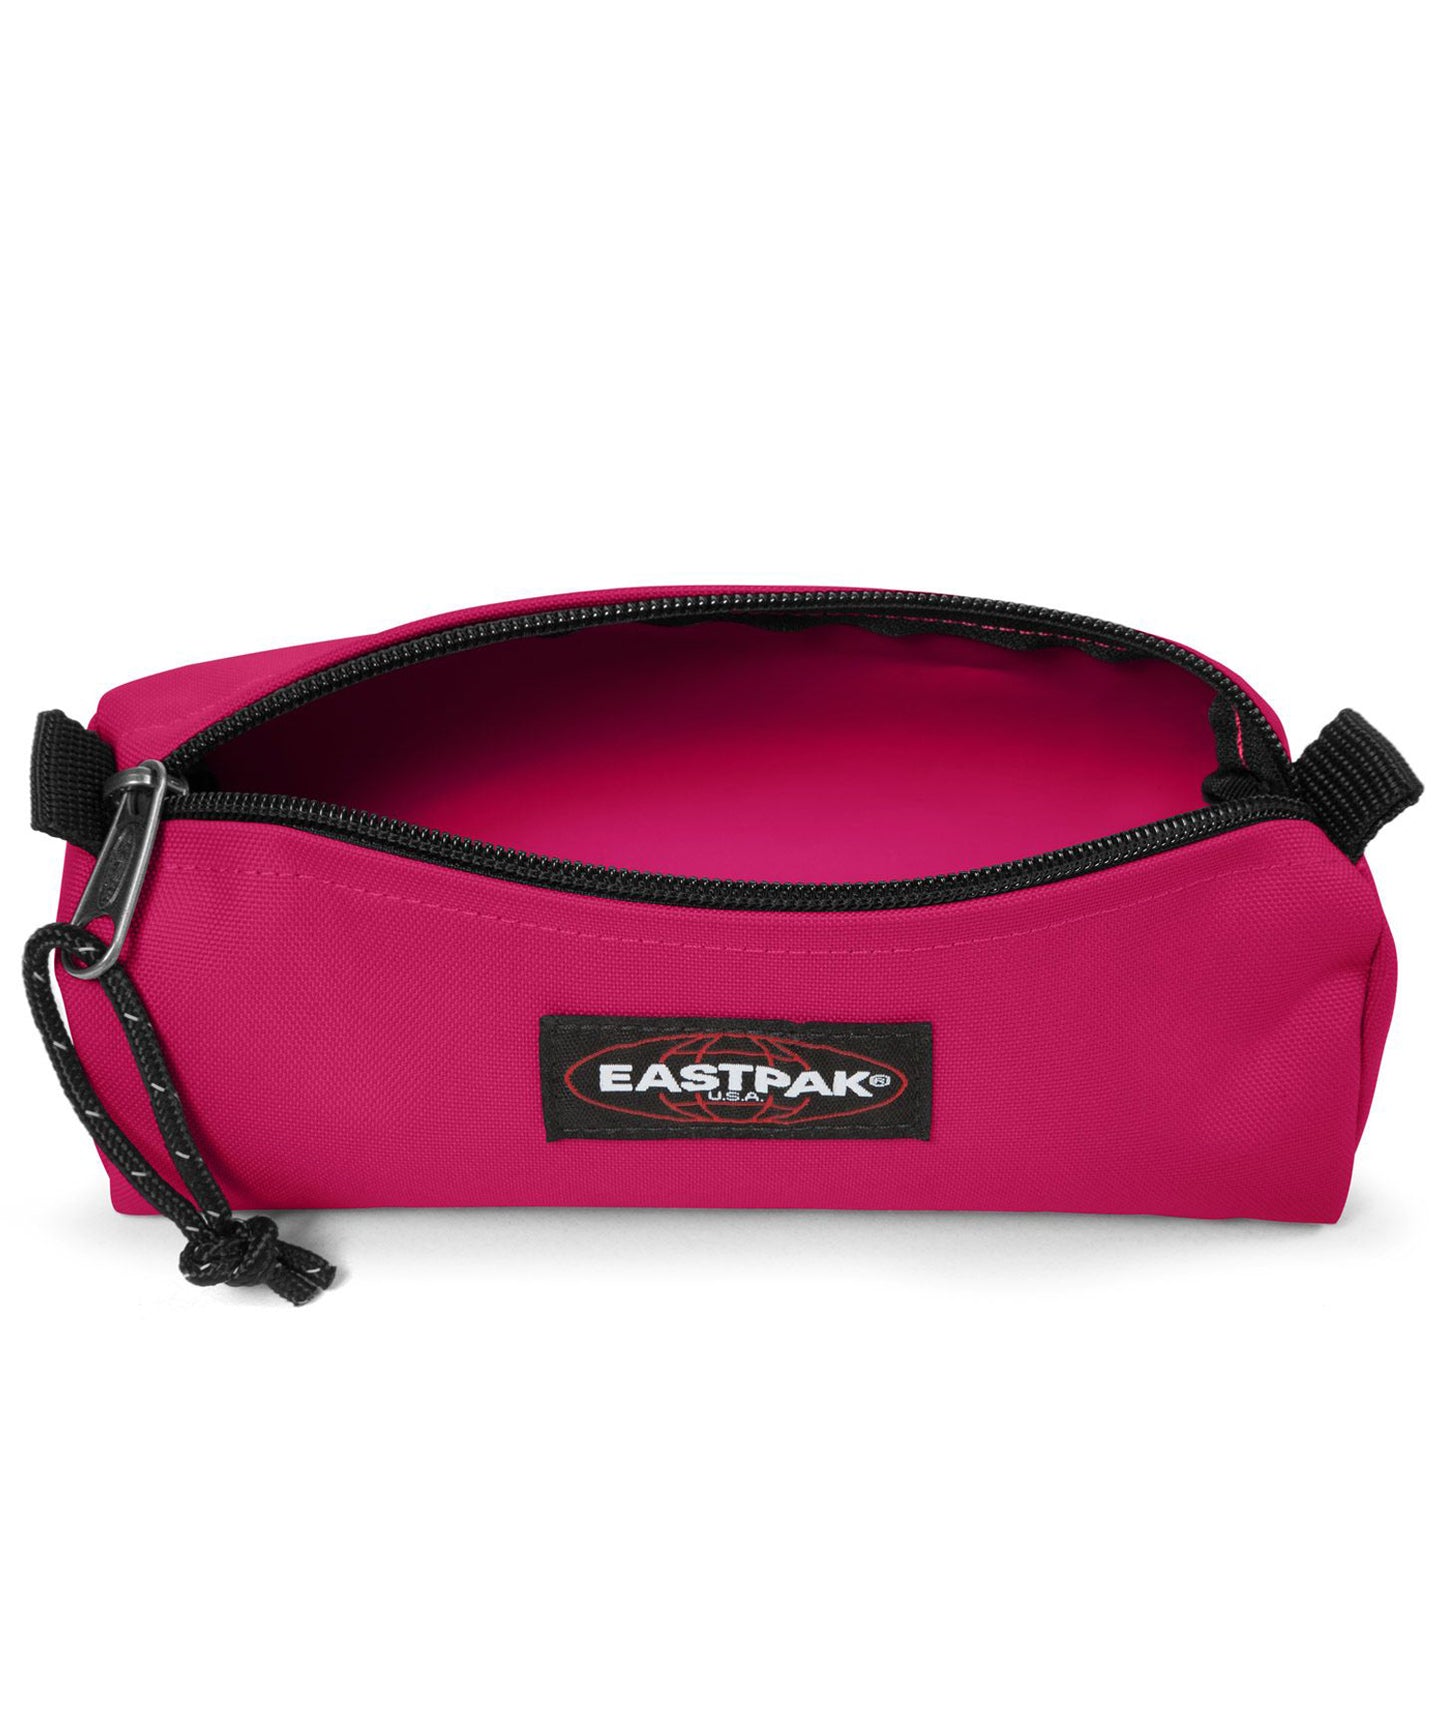 eastpak estuche benchmark de color rosa chilón, practico, sencillo, y duradero, cierre con cremallera.